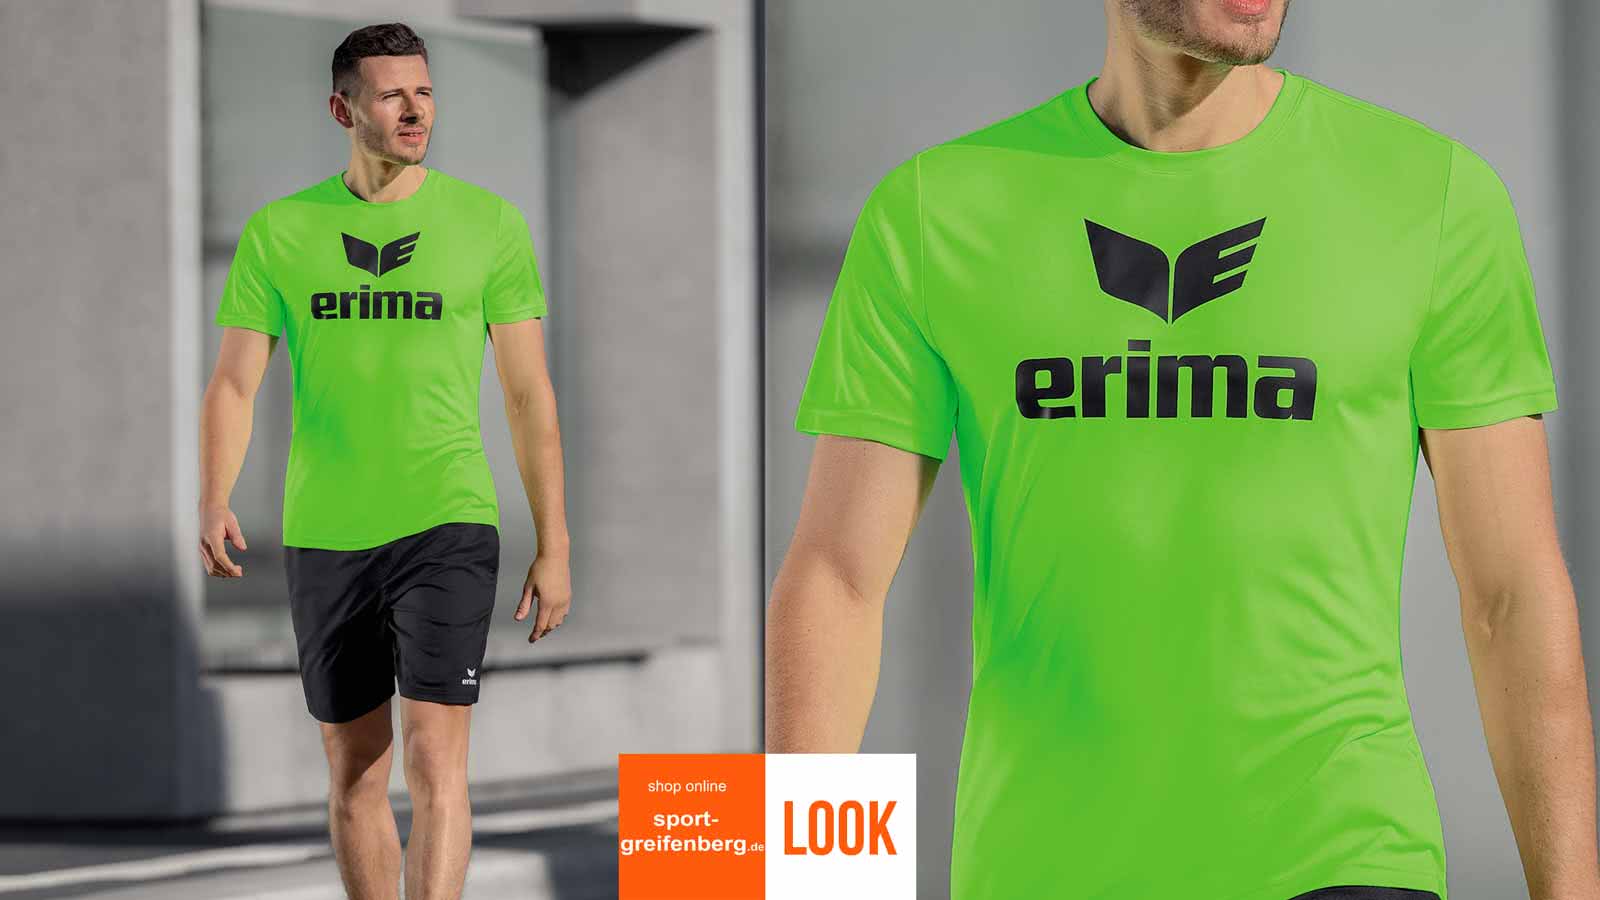 Der Erima Promotion Look mit Shirt und Short